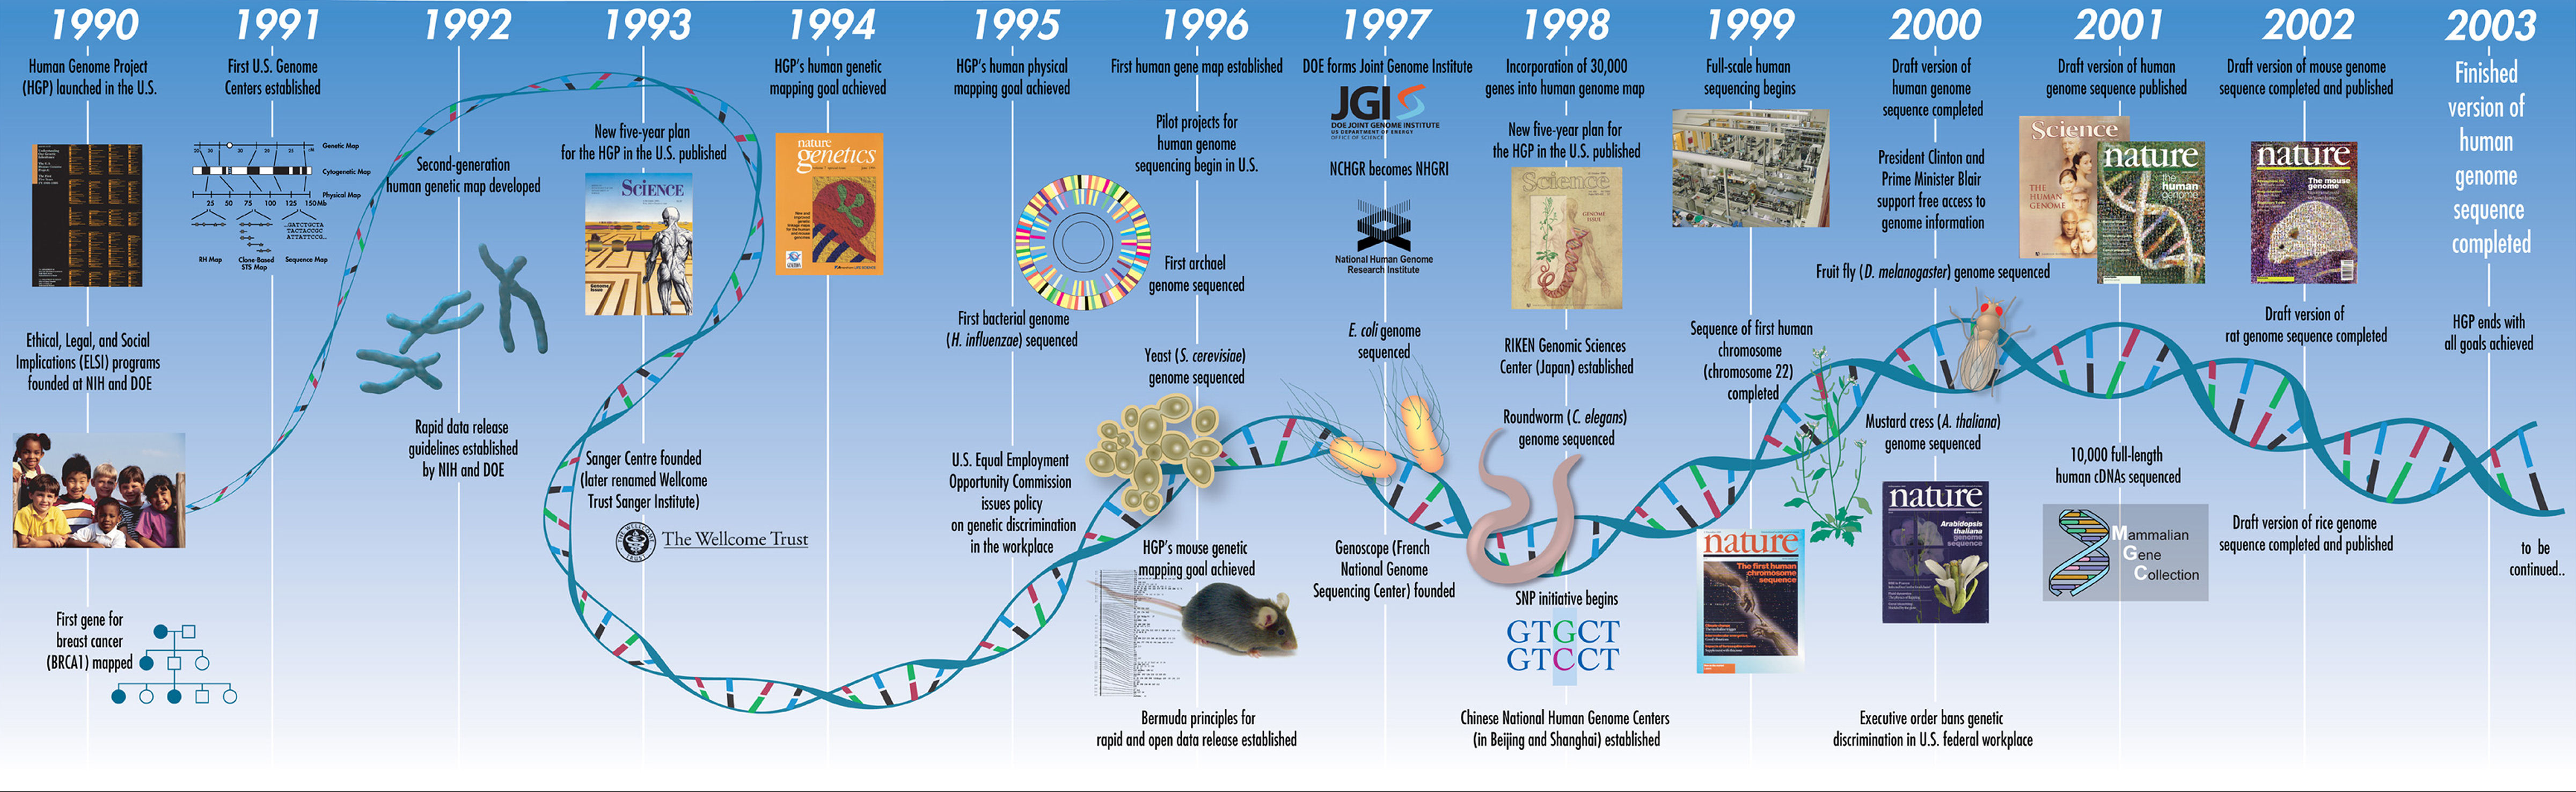 人类基因组计划时间表